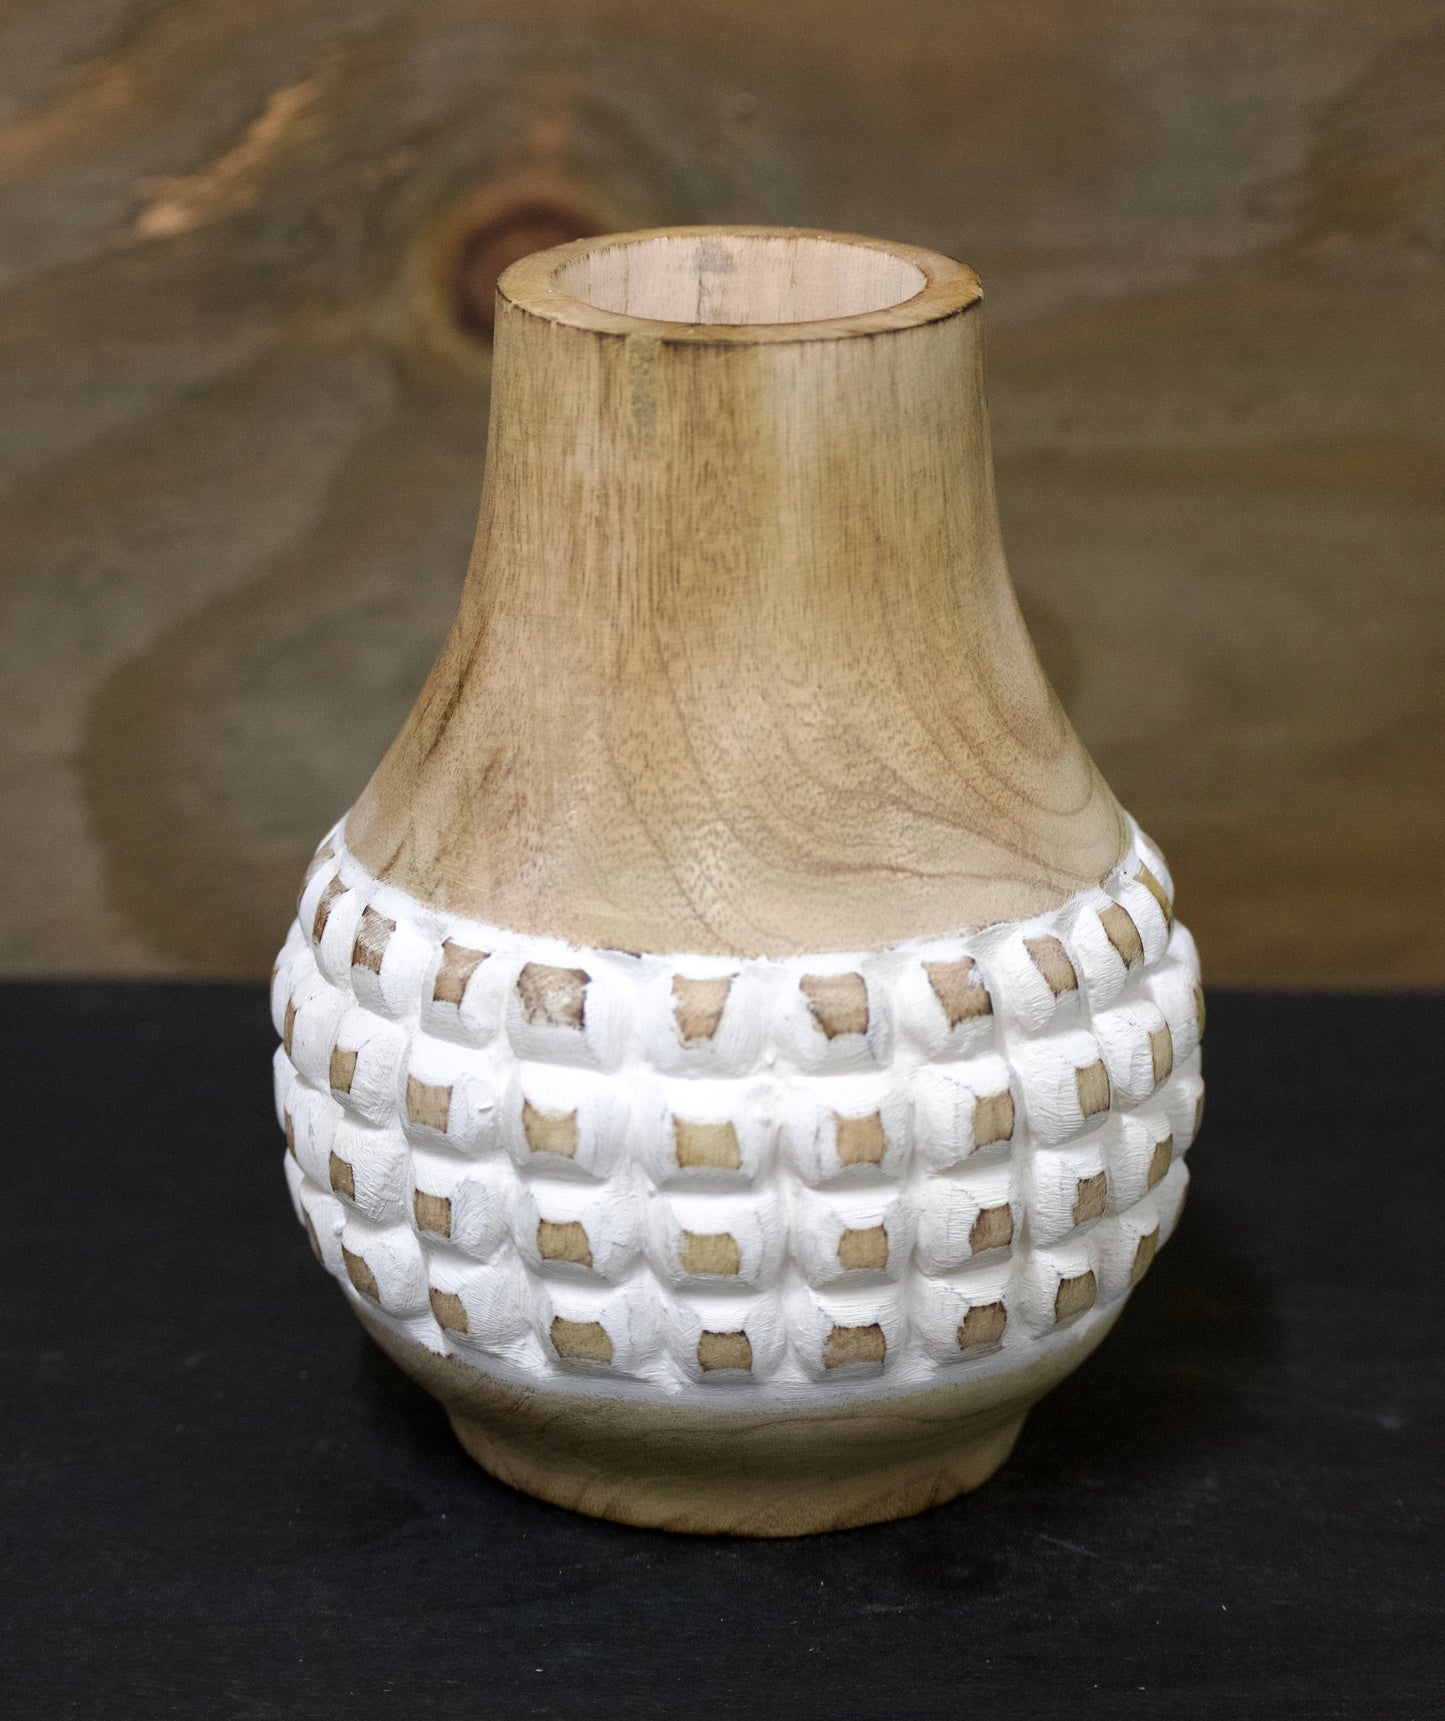 Checkered Bulb Vase - 4.25"